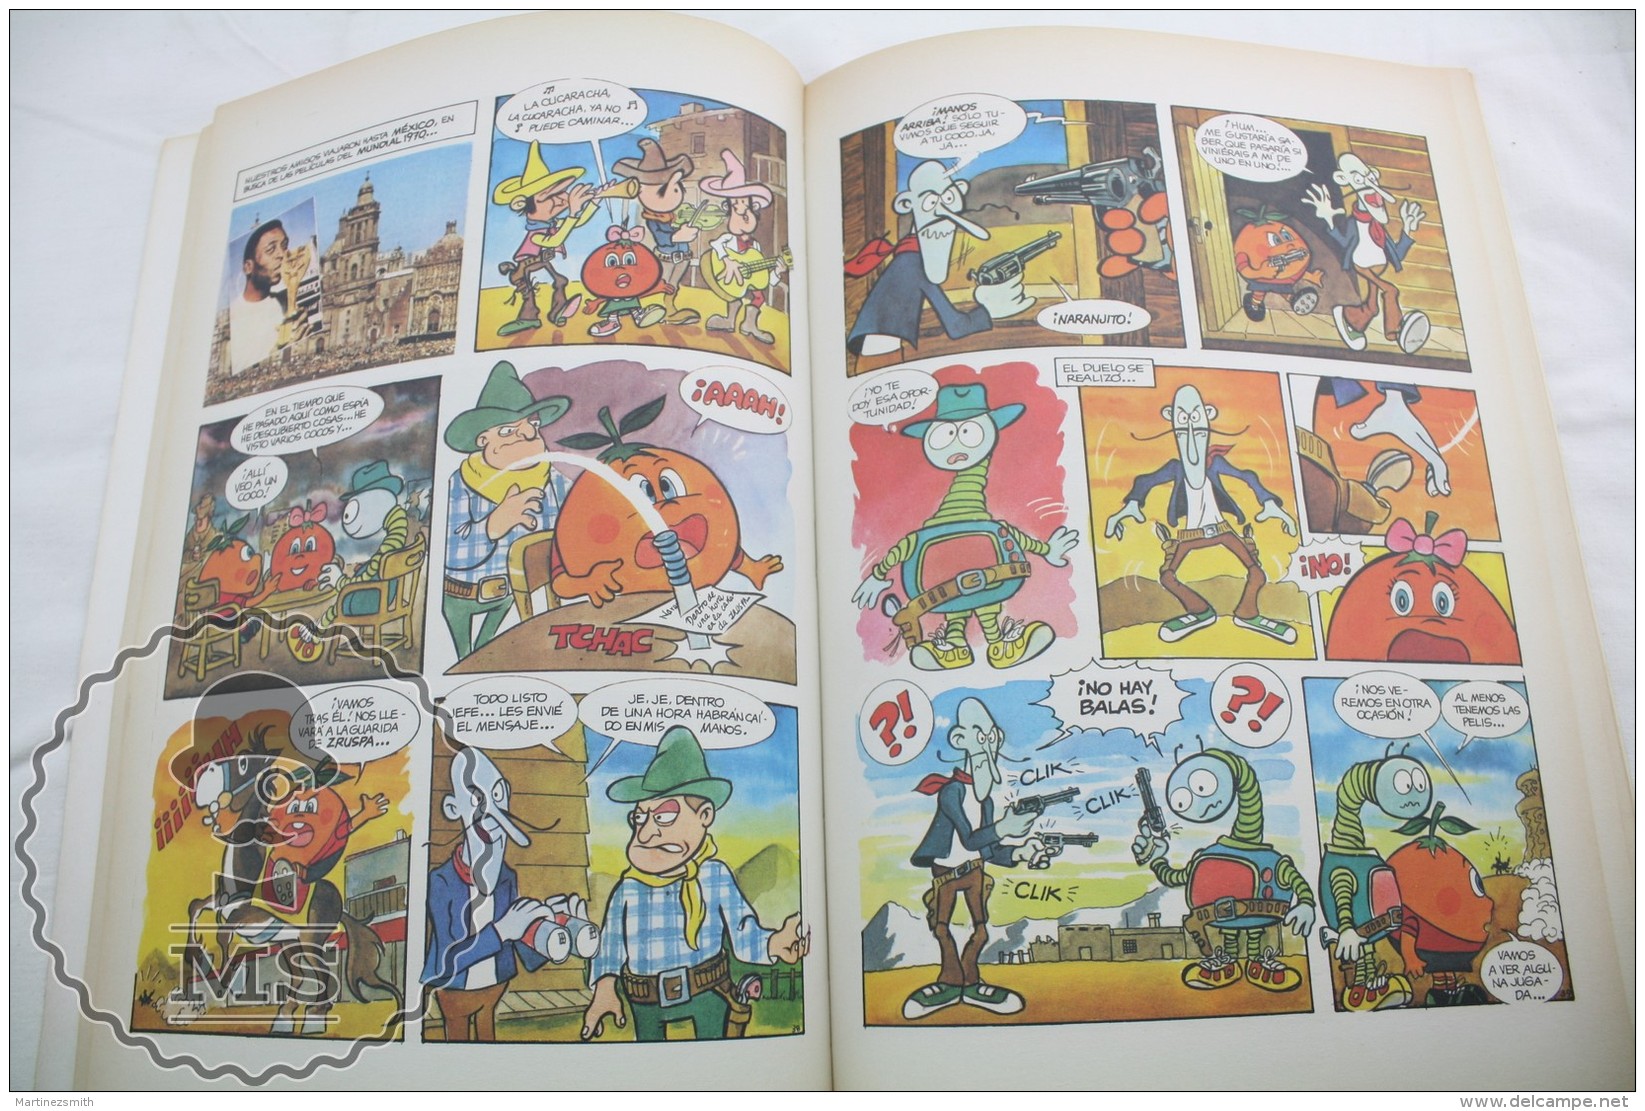 Collectible Football Spain 1982 FIFA World Cup Naranjito Mascot - Comic Book - Football In Action - Libros